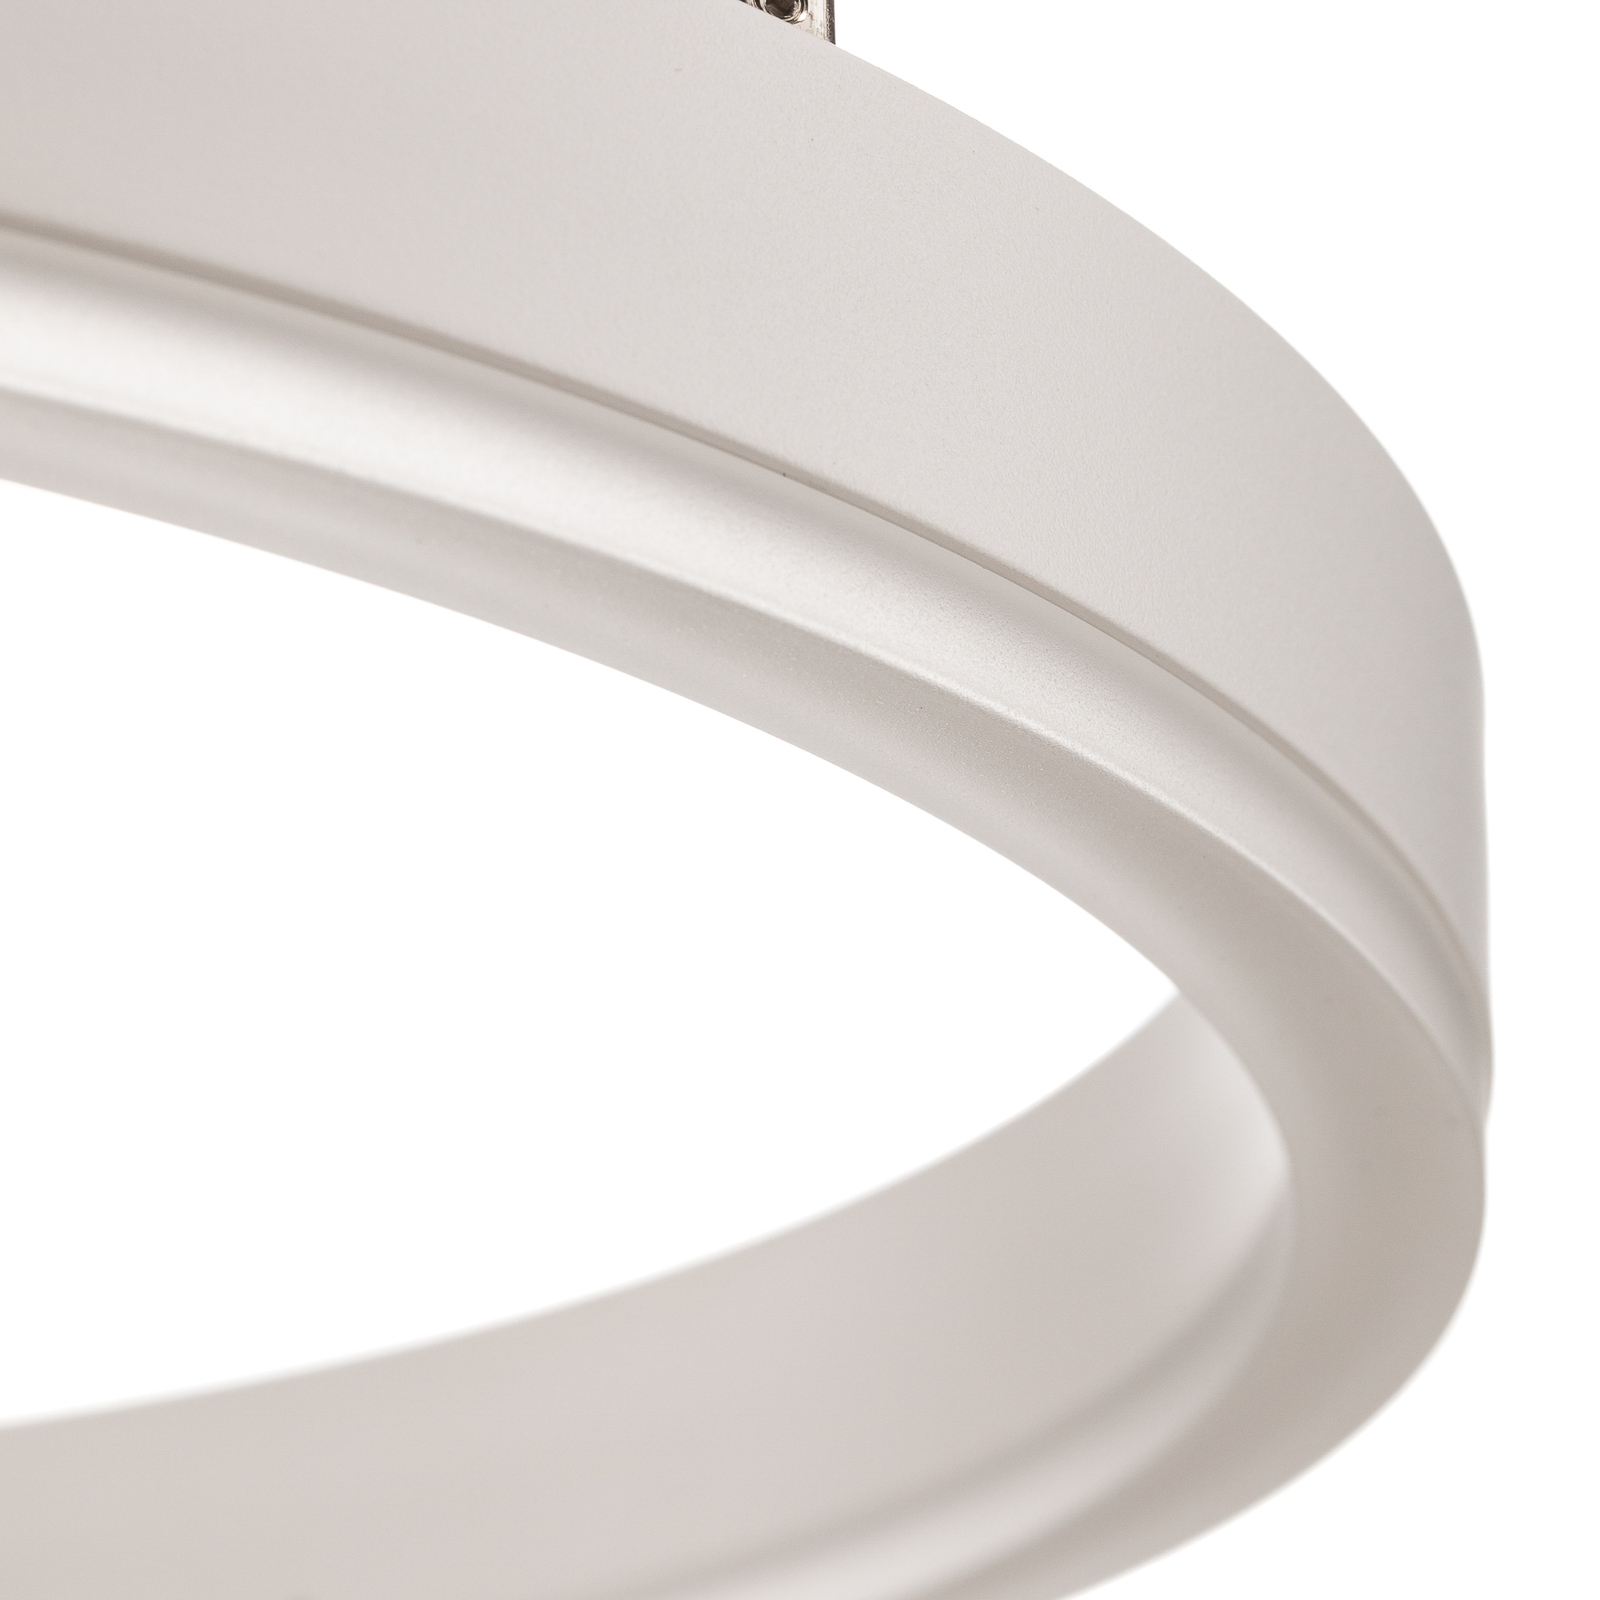 Arcchio Albiona LED-Hängeleuchte, weiß, 40 cm